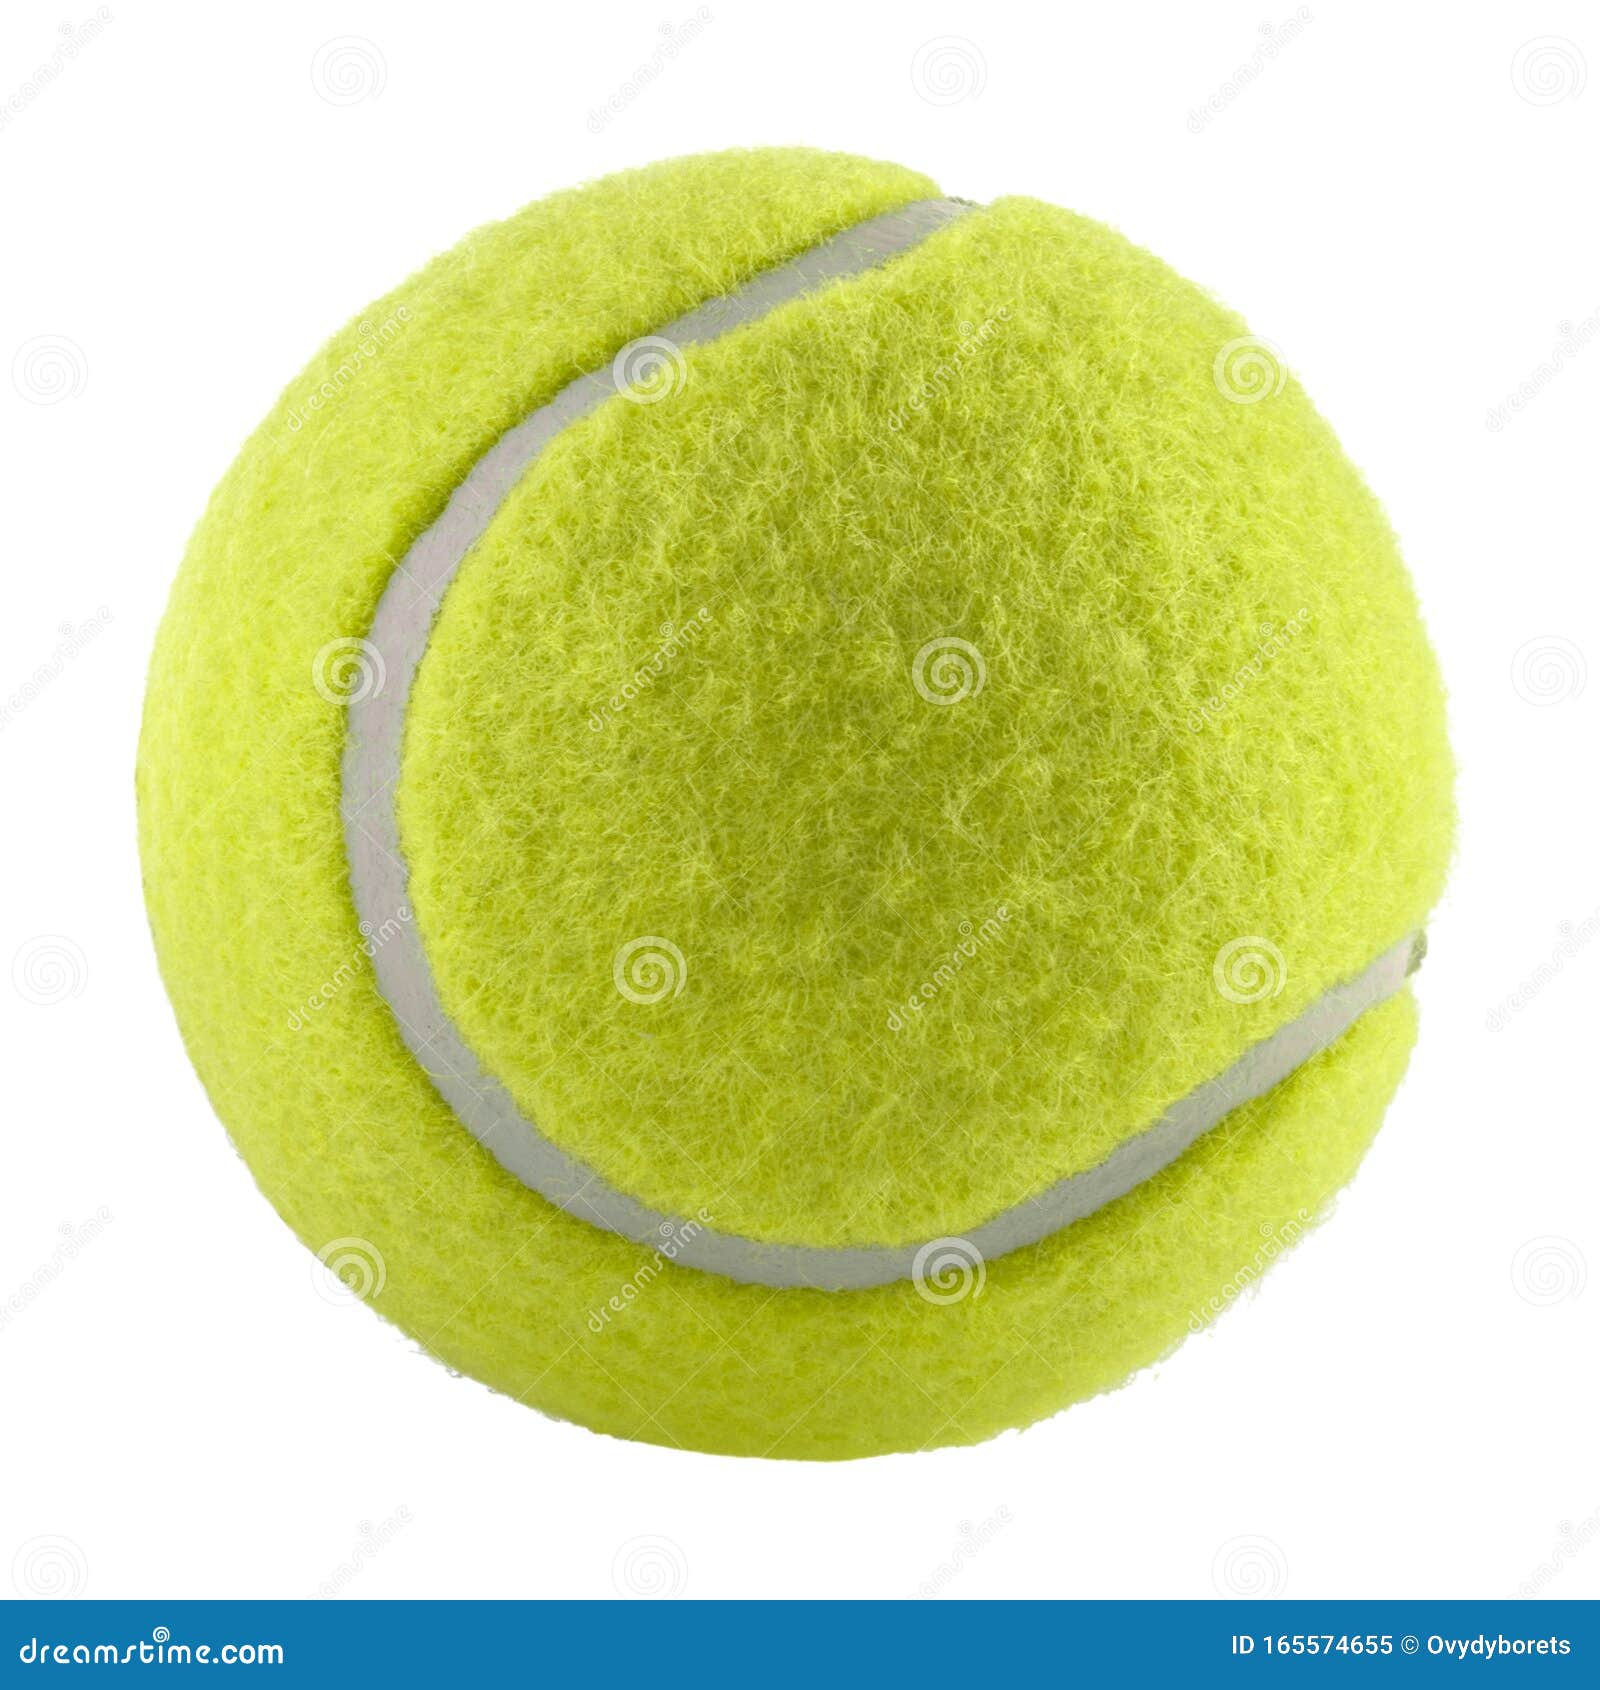 69 746 Tennis Ball Fotos Kostenlose Und Royalty Free Stock Fotos Von Dreamstime